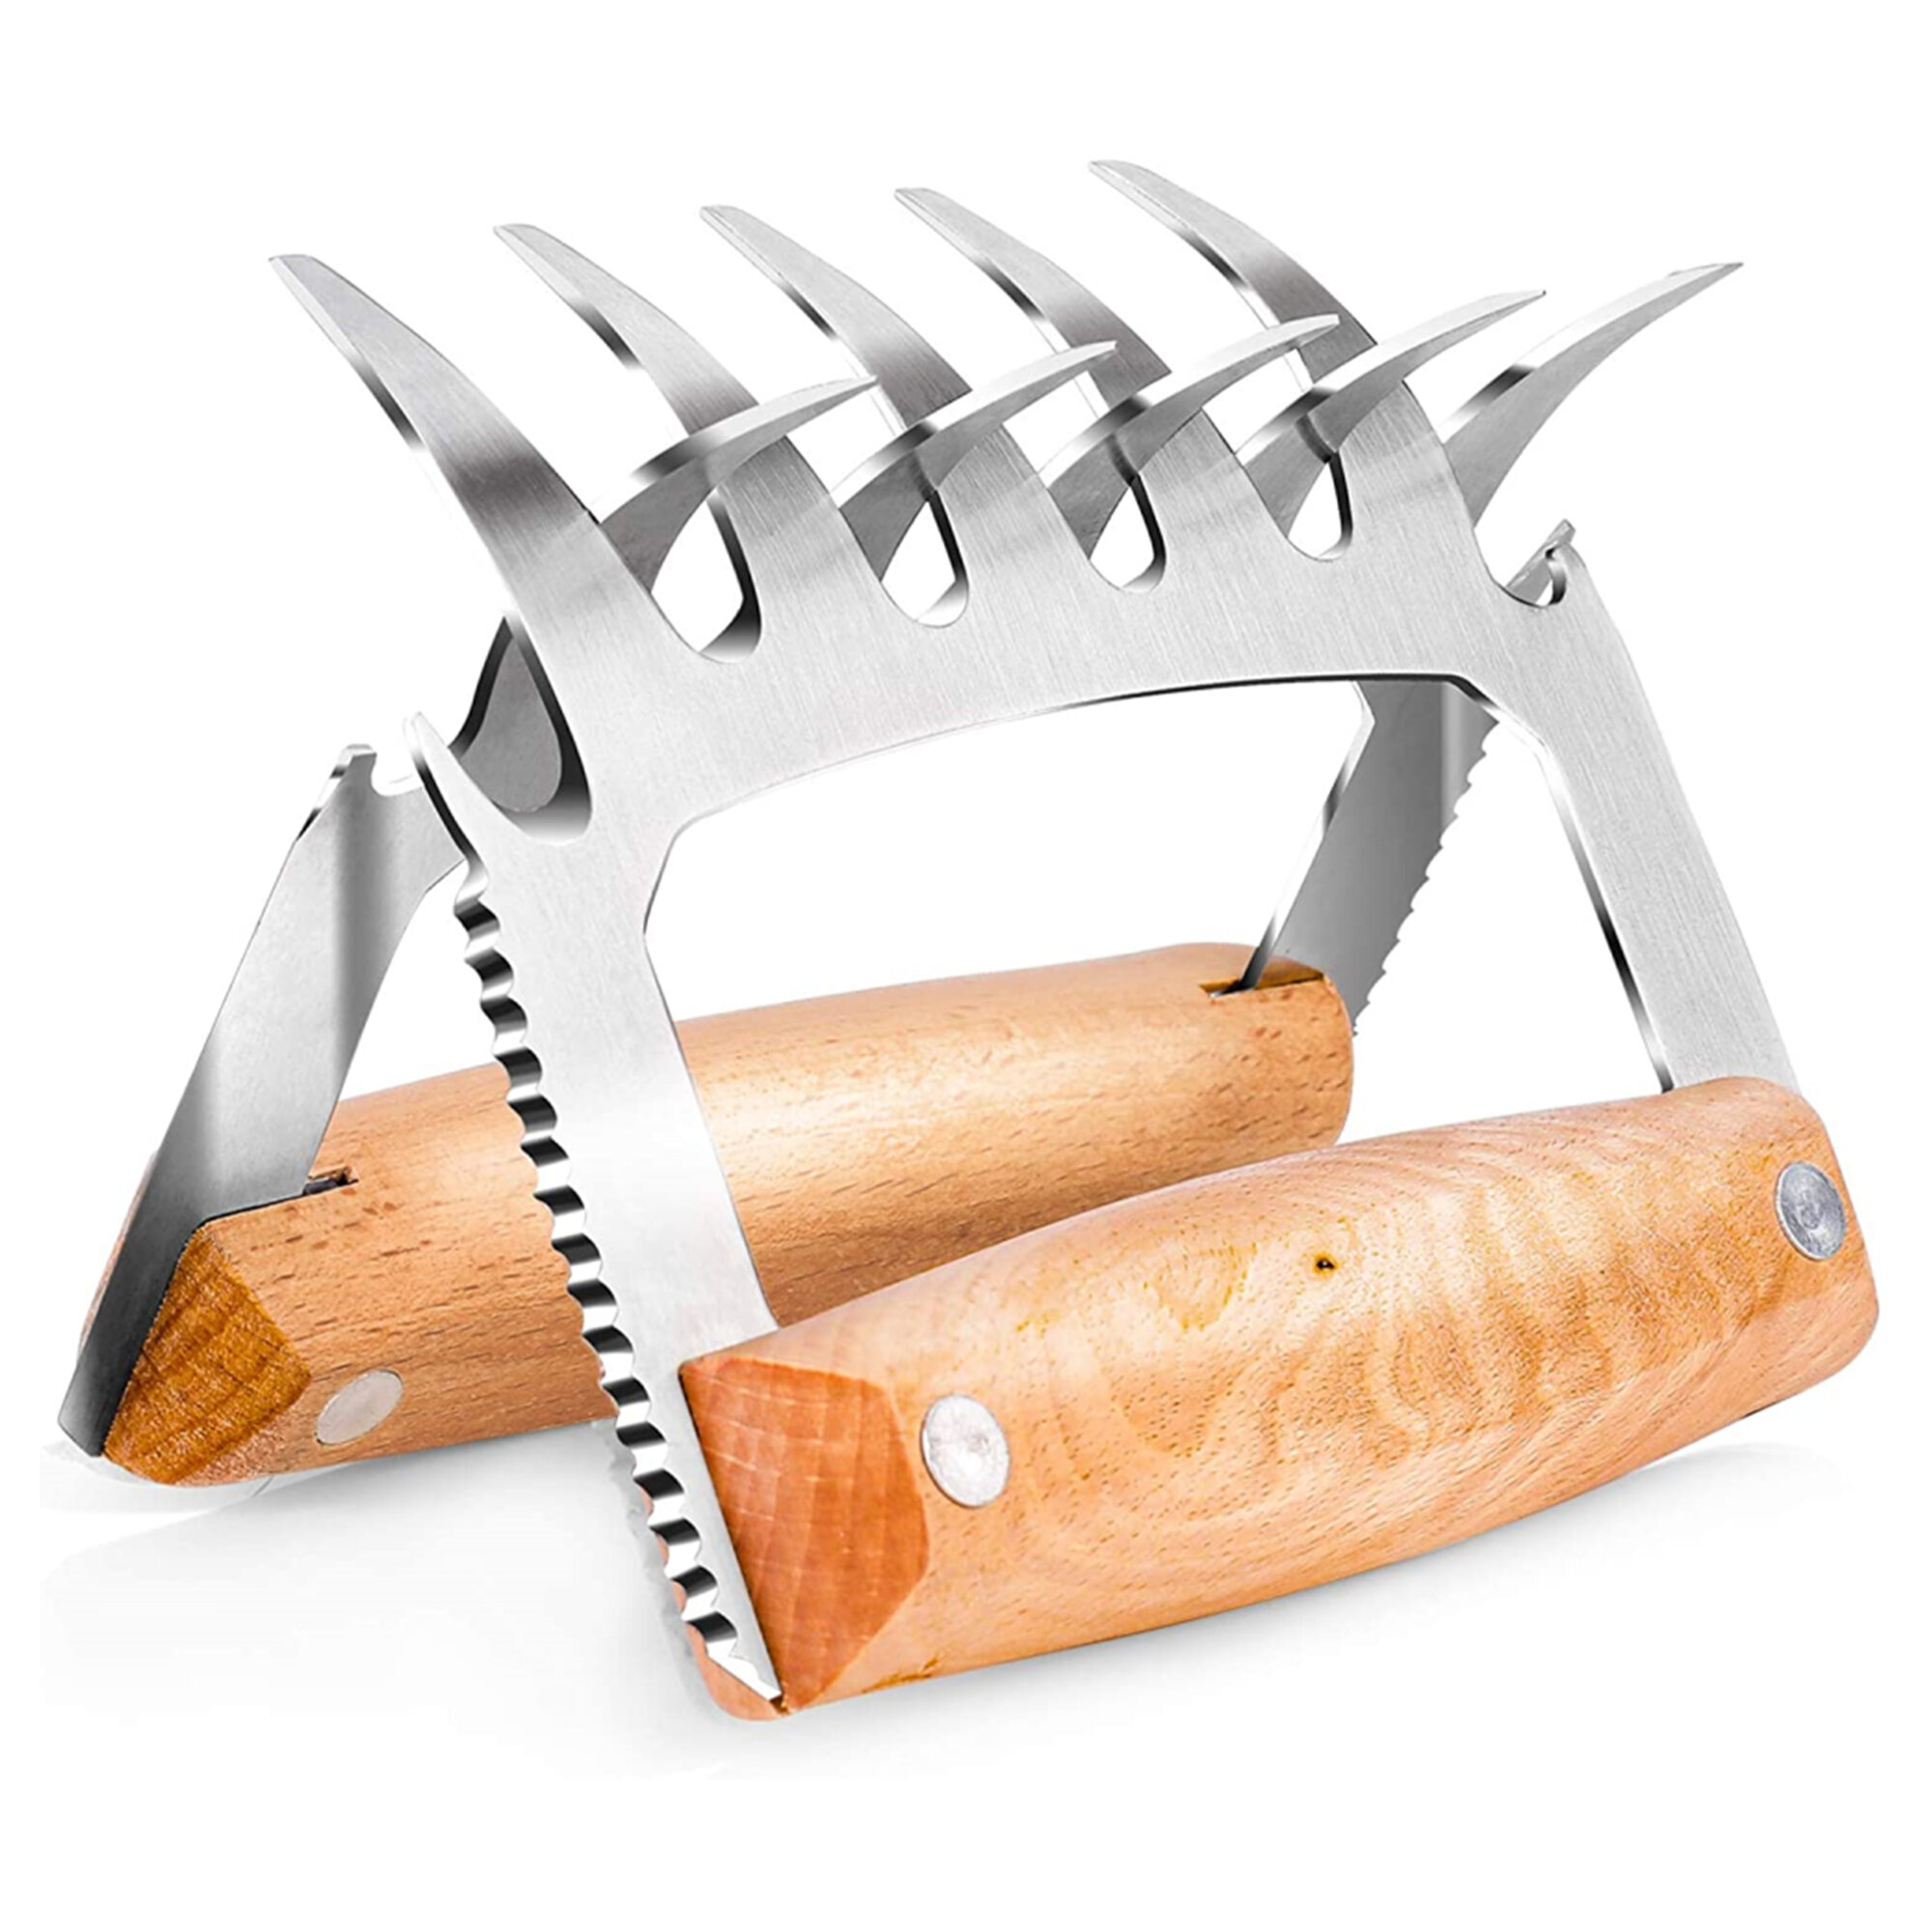 2PCS Stainless Steel Meat Shredder Claws Utensil BBQ Tool For Shredding Kitchen